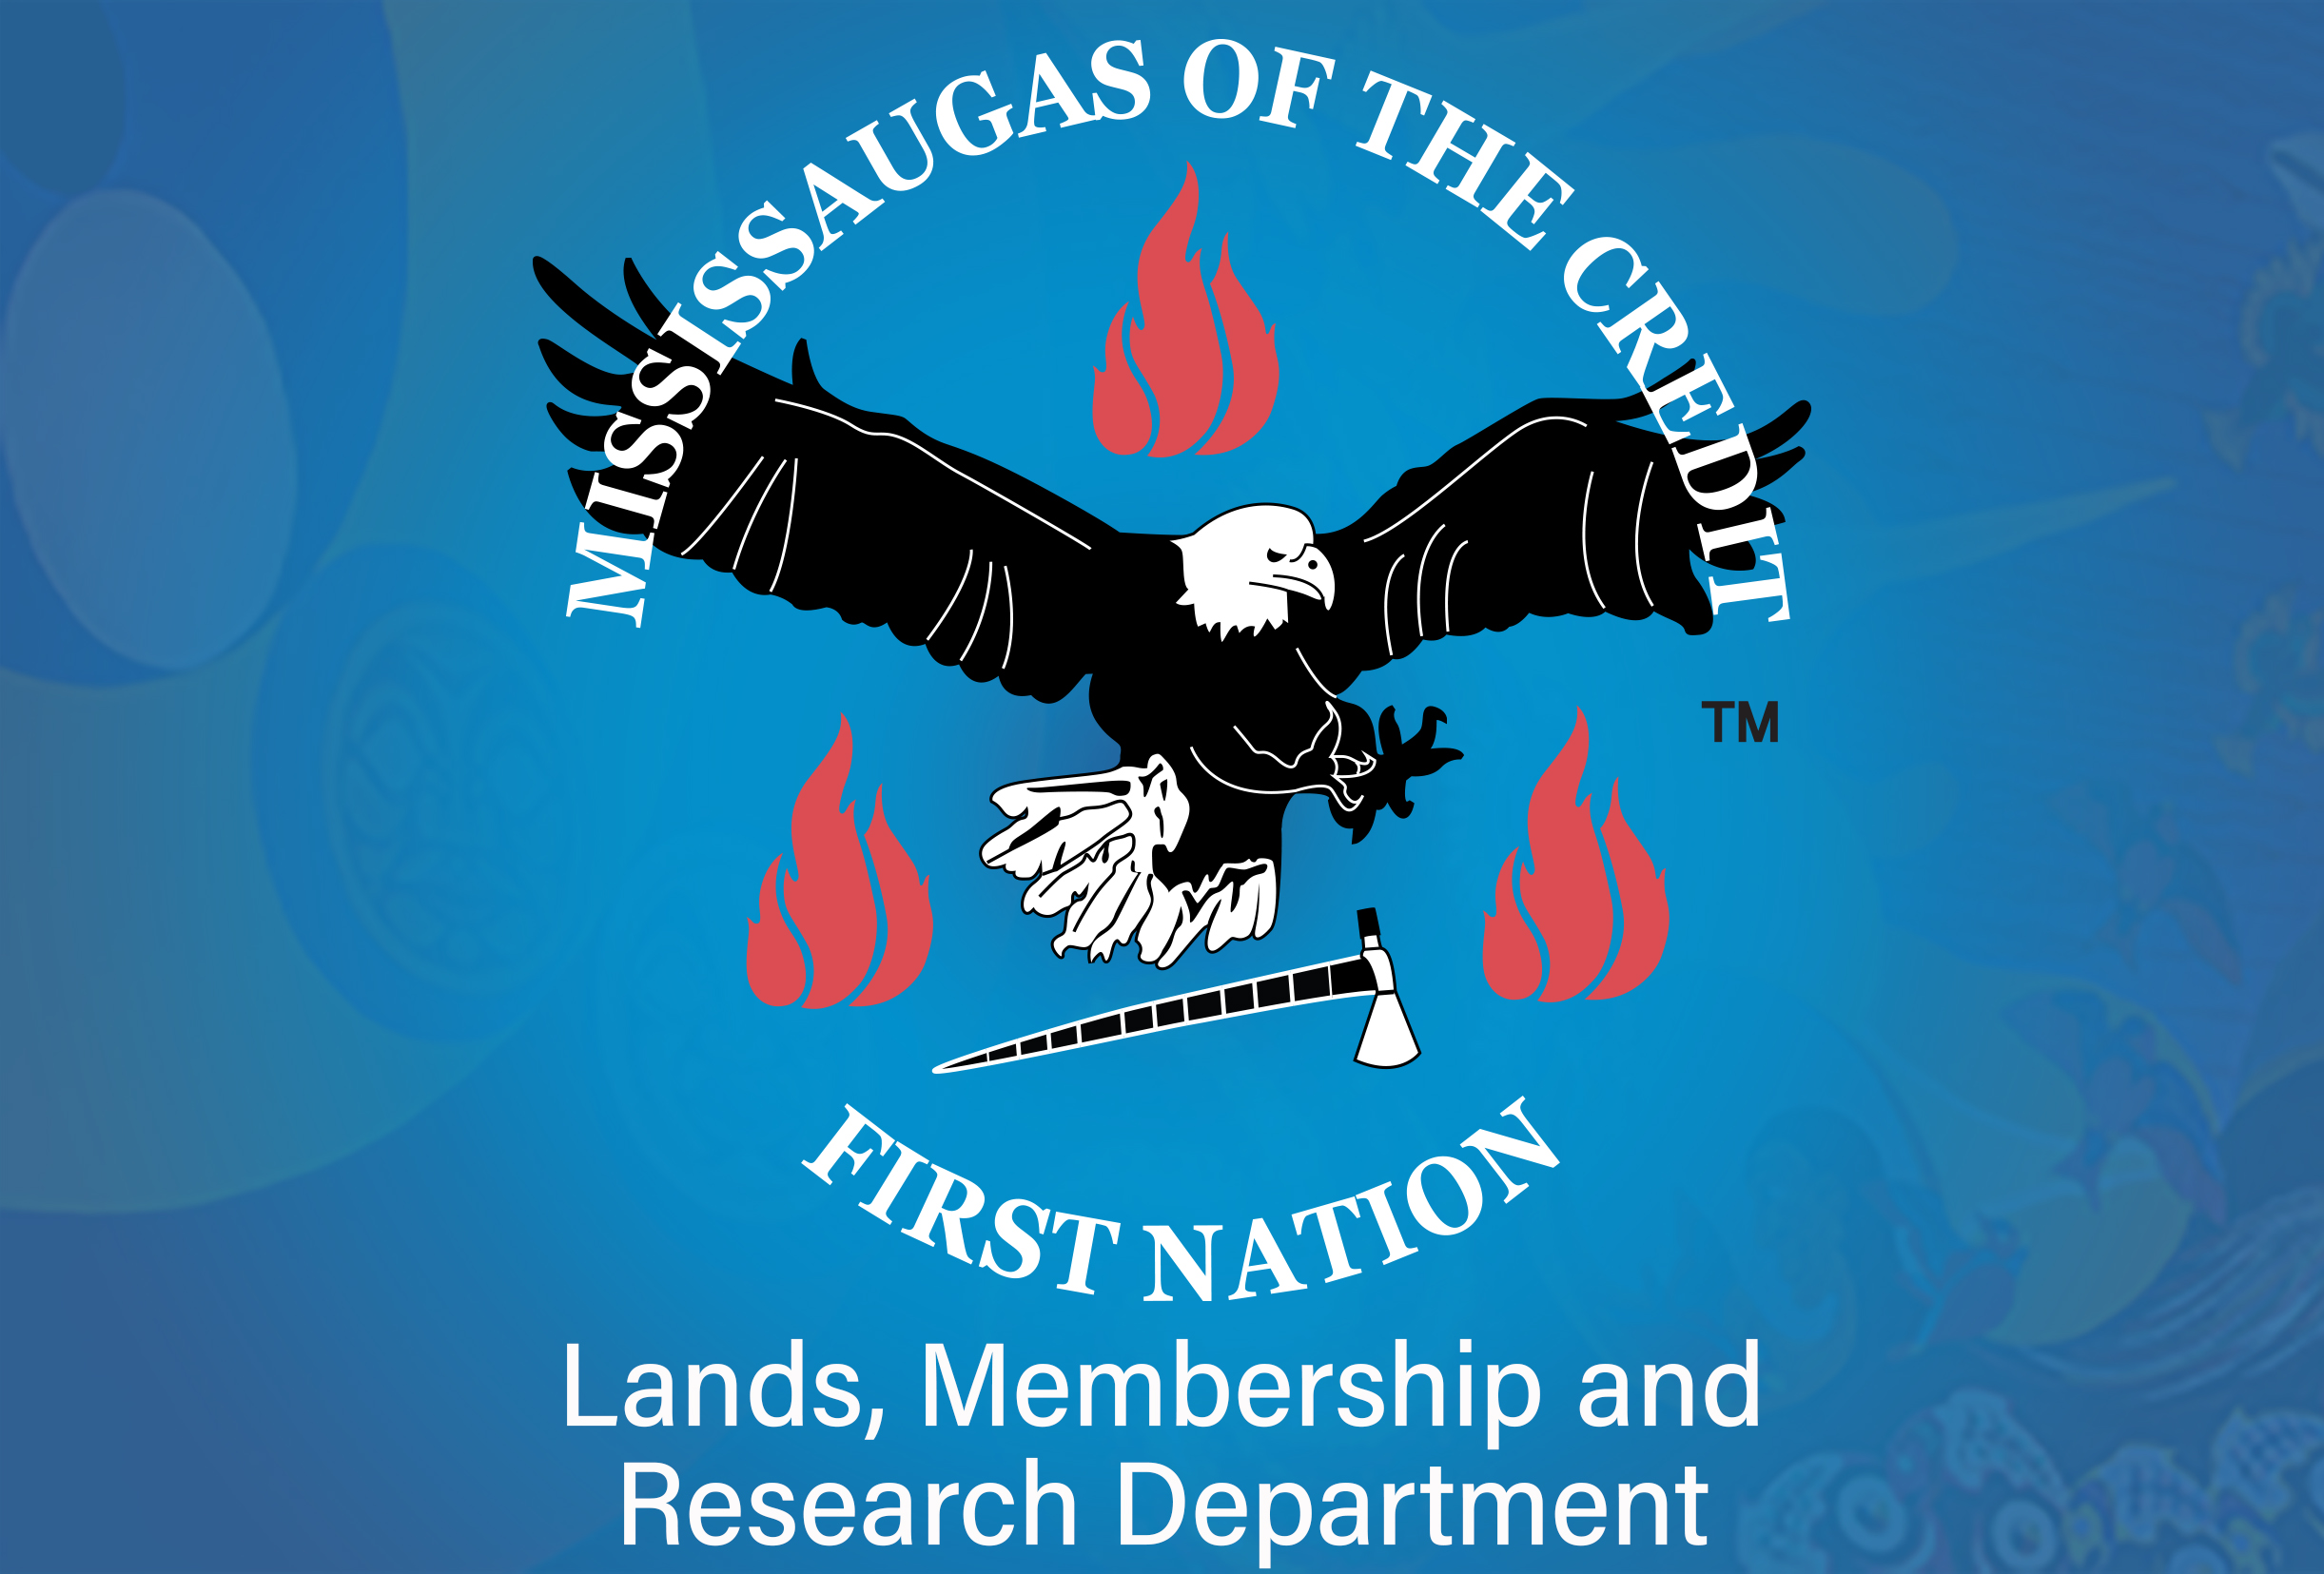 Lands, Membership & Research